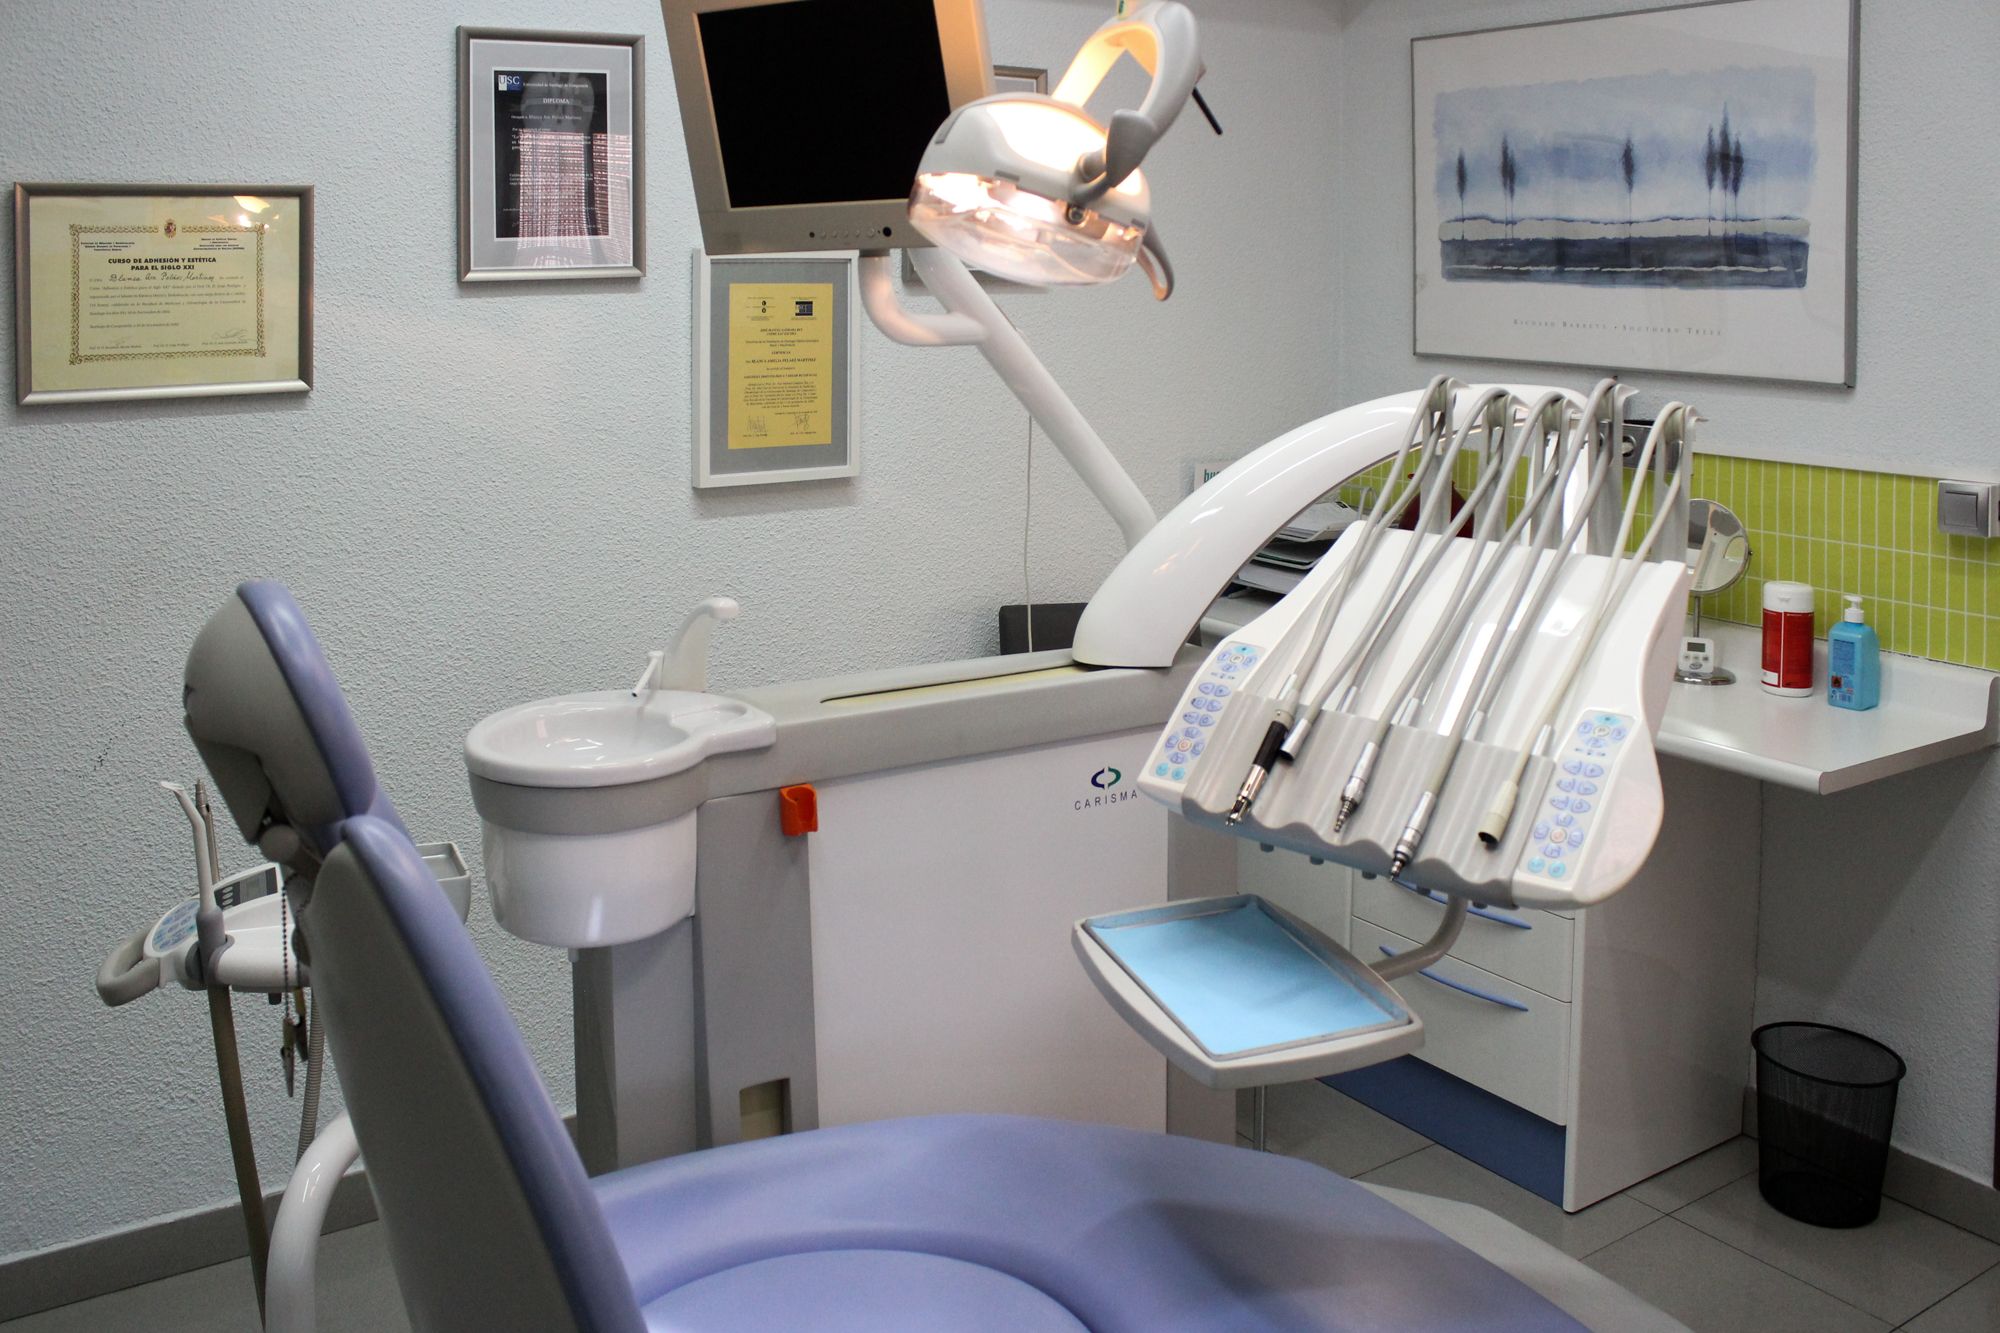 Foto 10 de Dentistas en Madrid | Clínica BP Bucal y Podológica